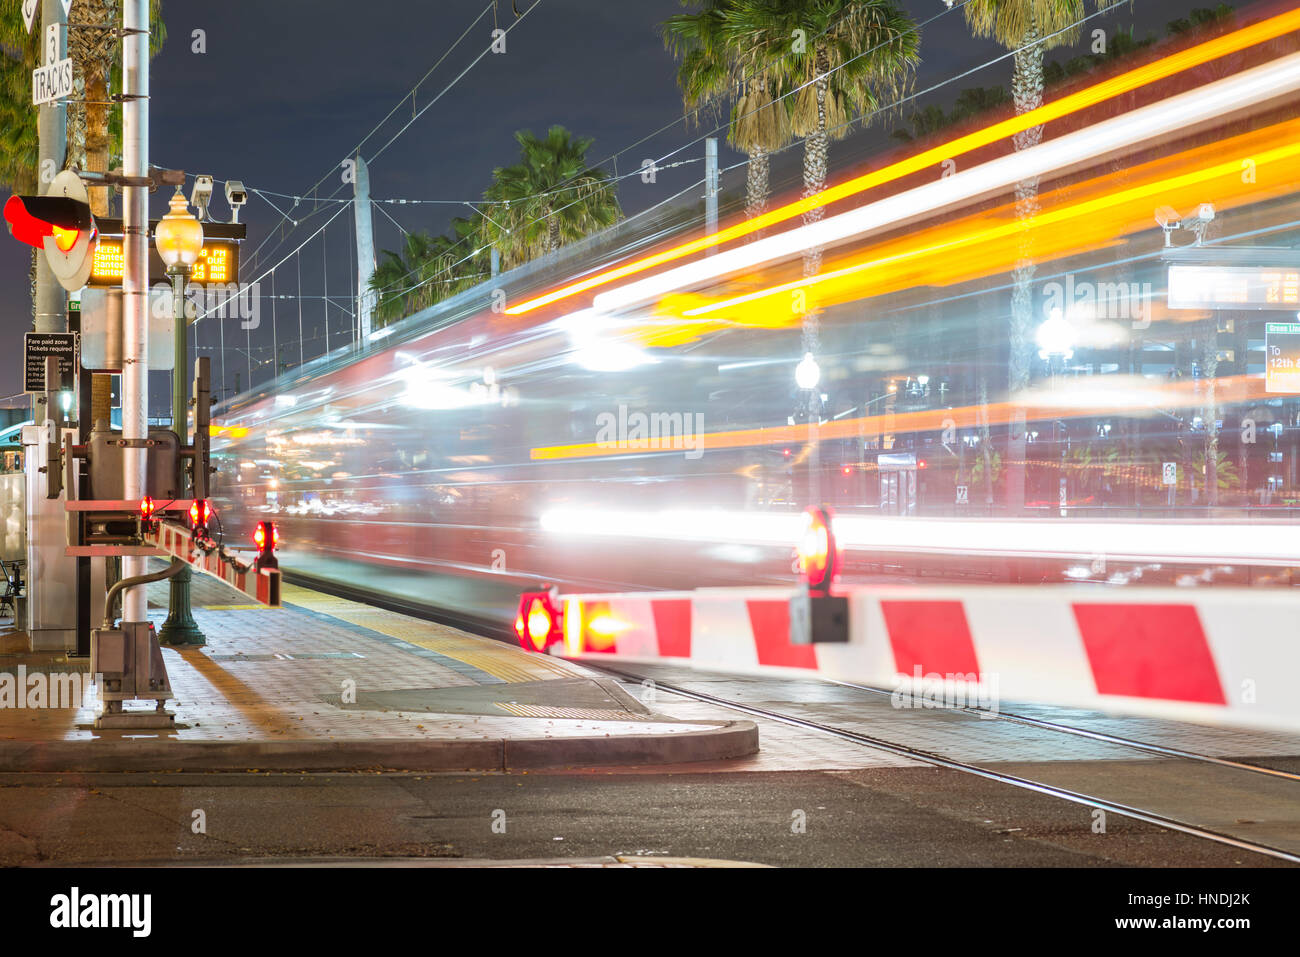 Die San Diego Trolley in der Nacht mit Motion blur. Die Innenstadt von San Diego, Kalifornien, USA. Stockfoto